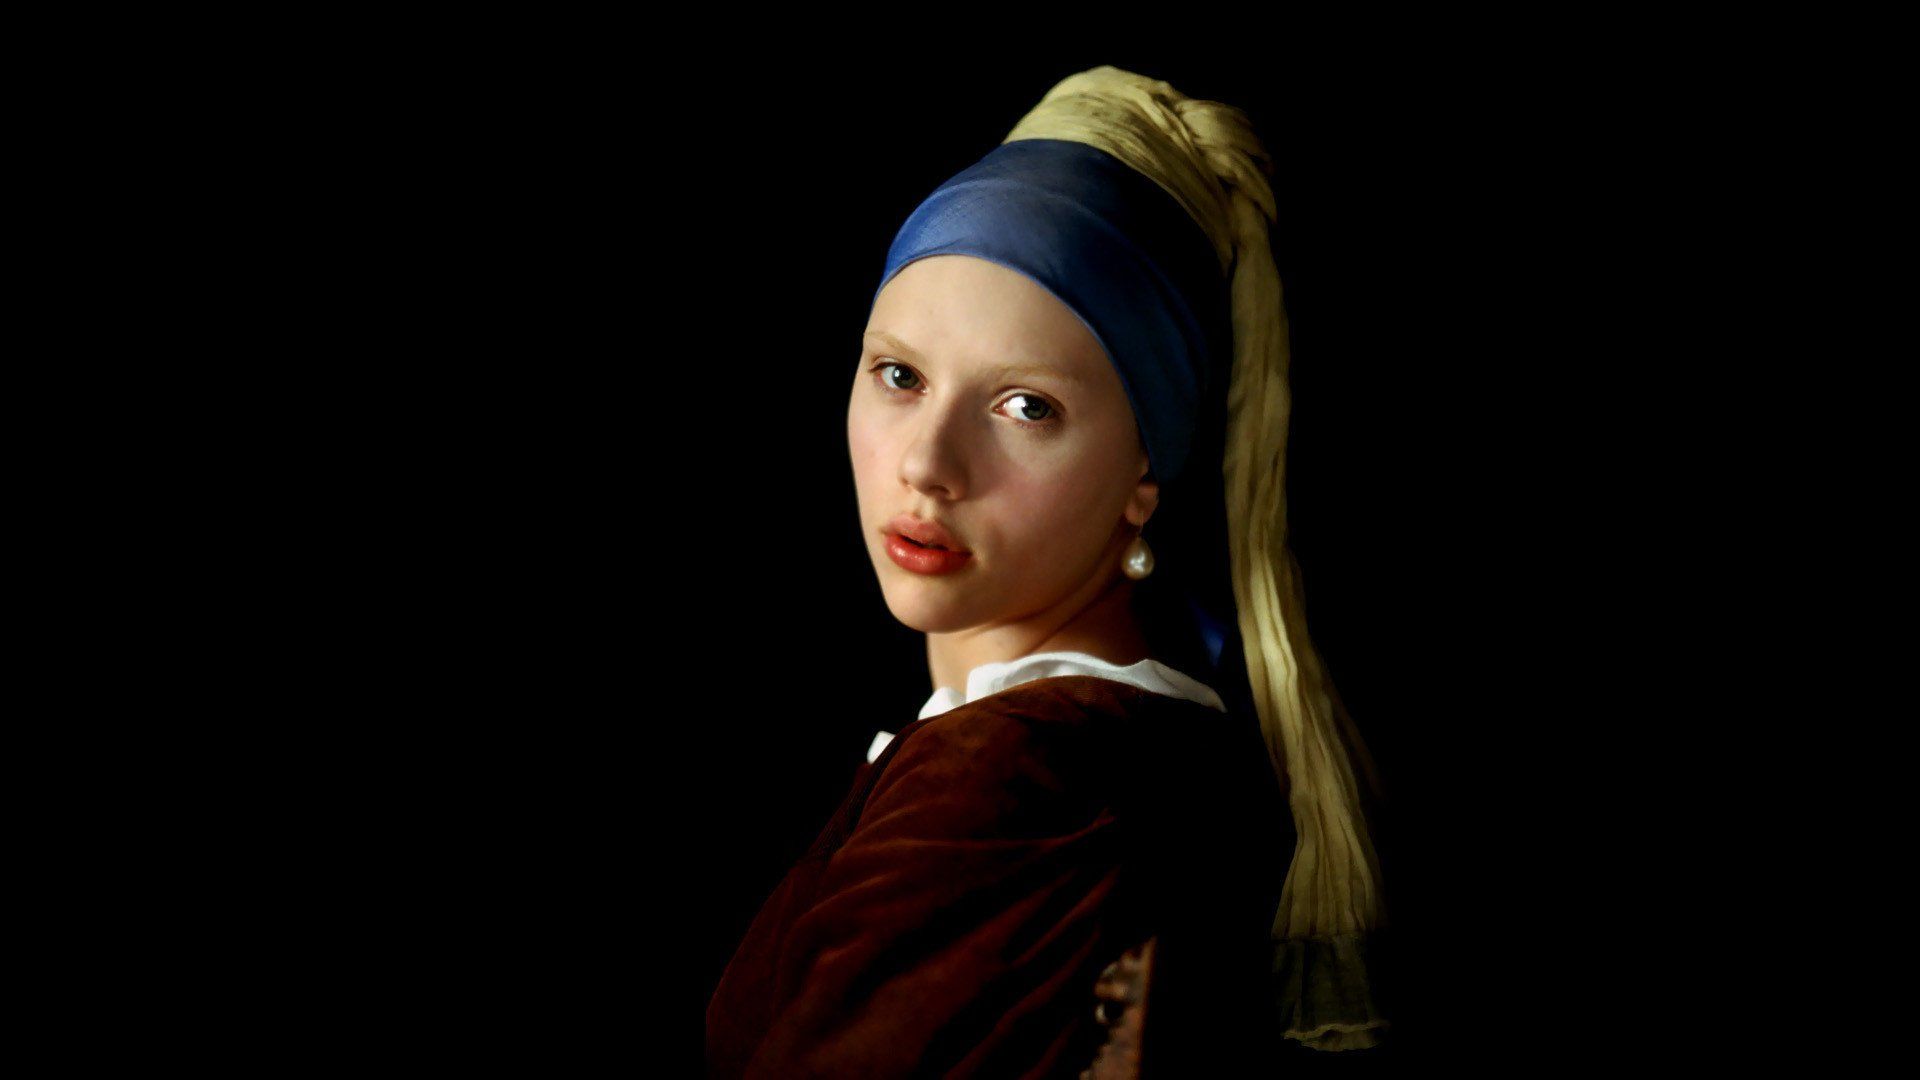 دانلود فیلم Girl with a Pearl Earring 2003